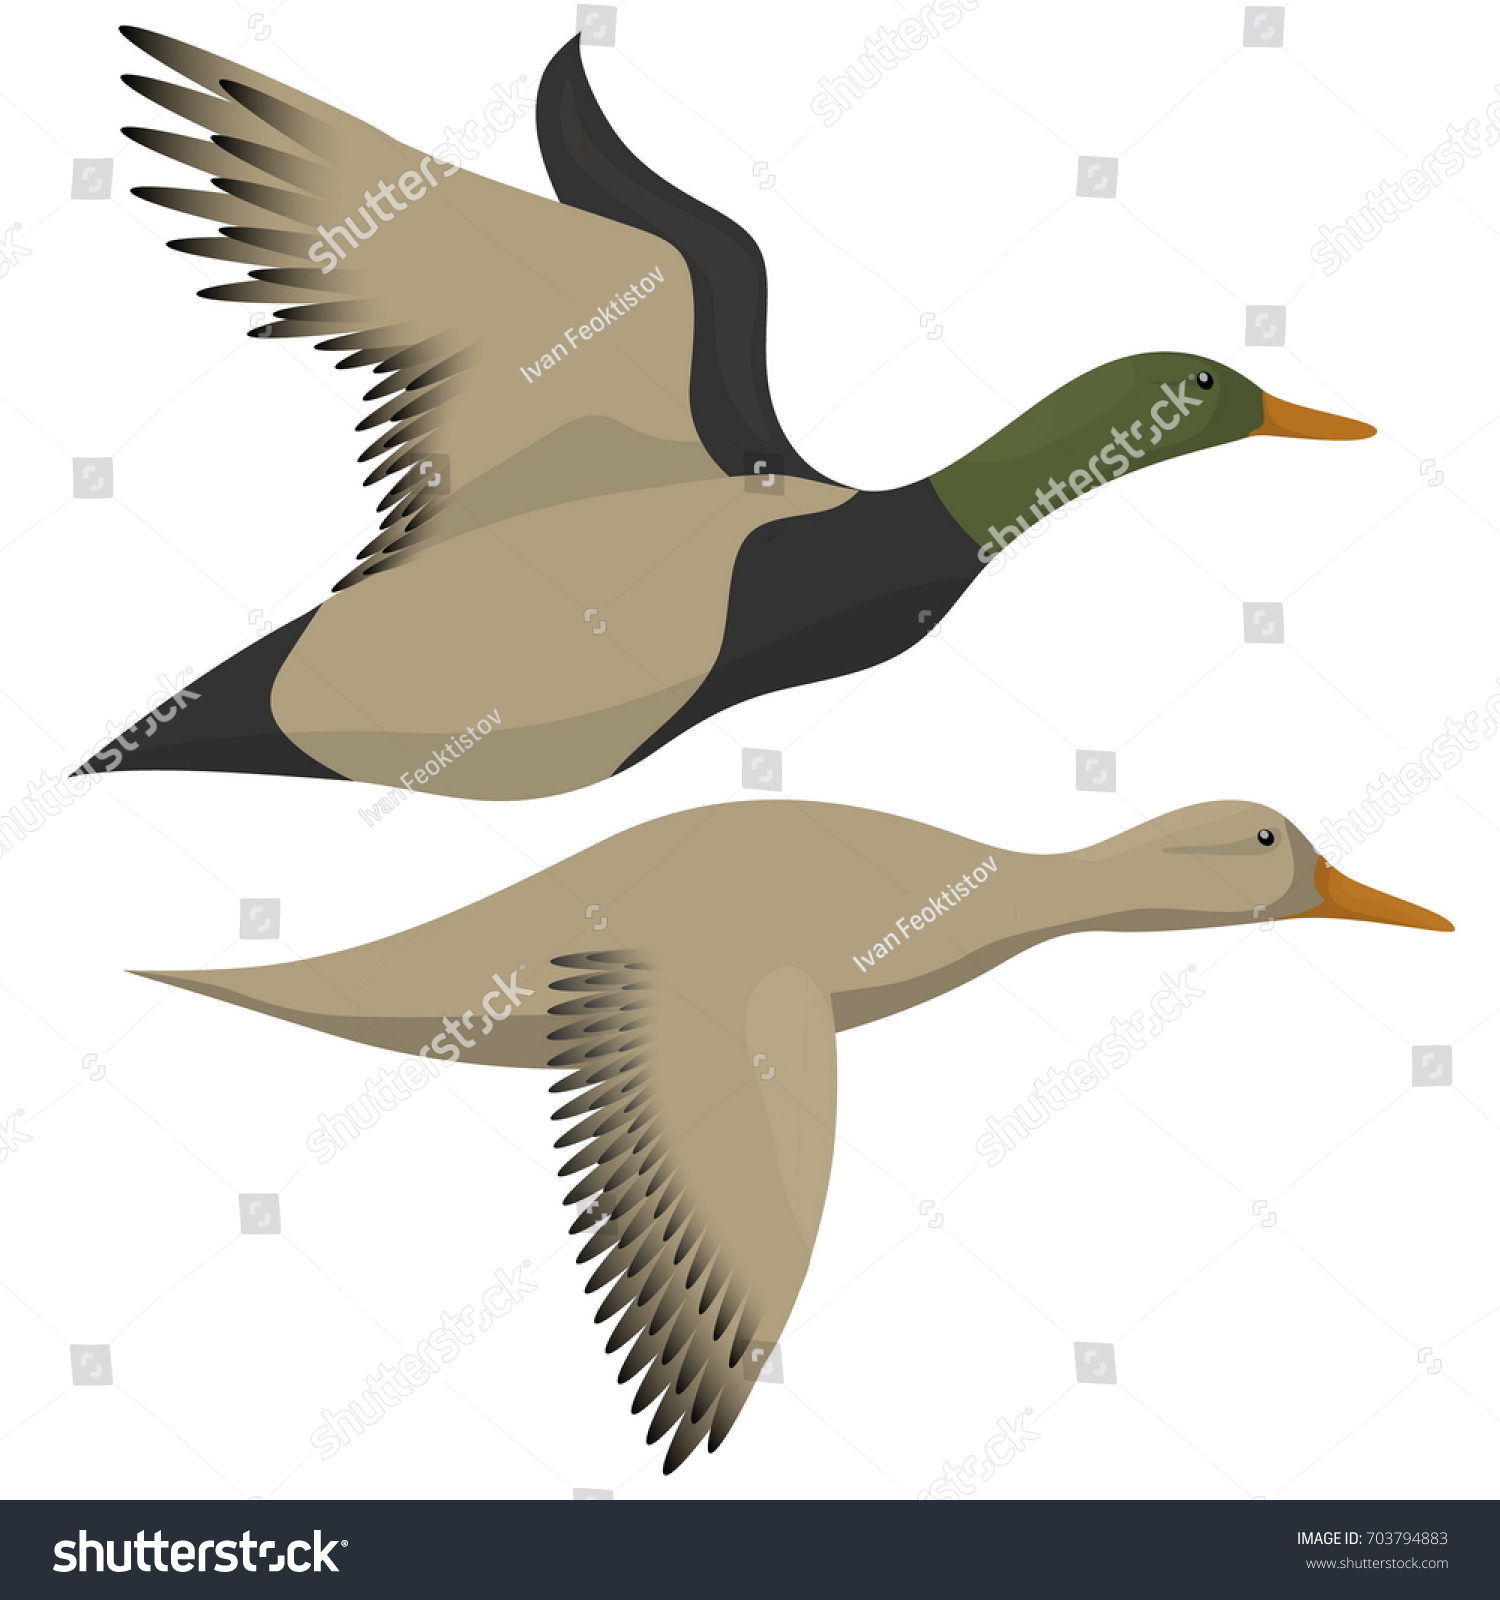 Flying Ducks Isolated On White Drake Stock Illustration 703794883 ...